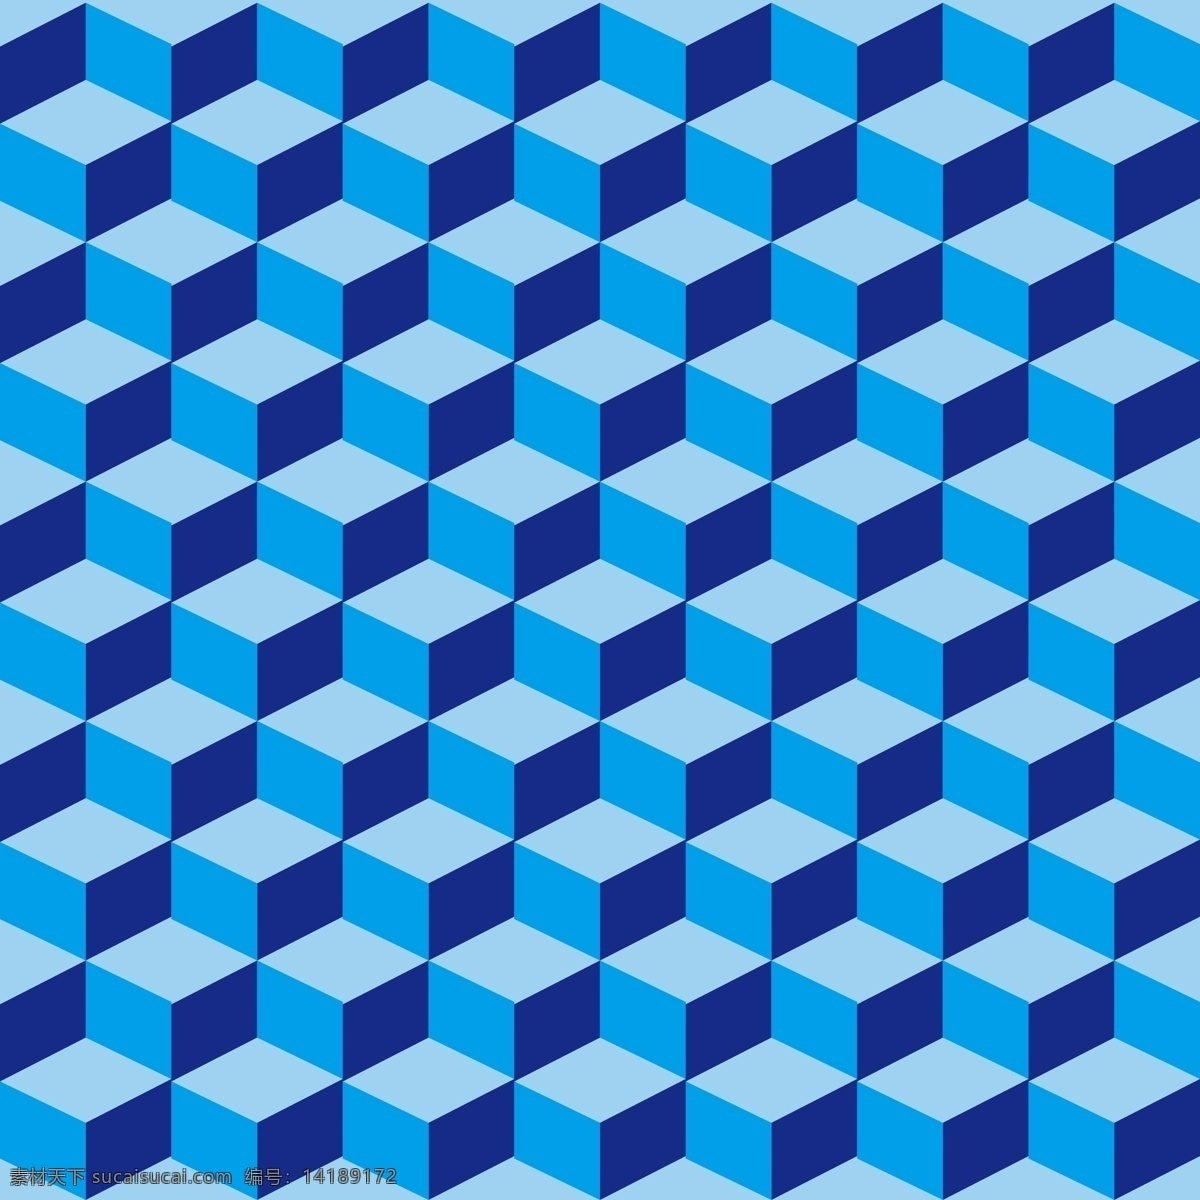 矢量立体空间 装饰图 蓝色系装饰图 蓝色立体空间 对称装饰 招贴设计